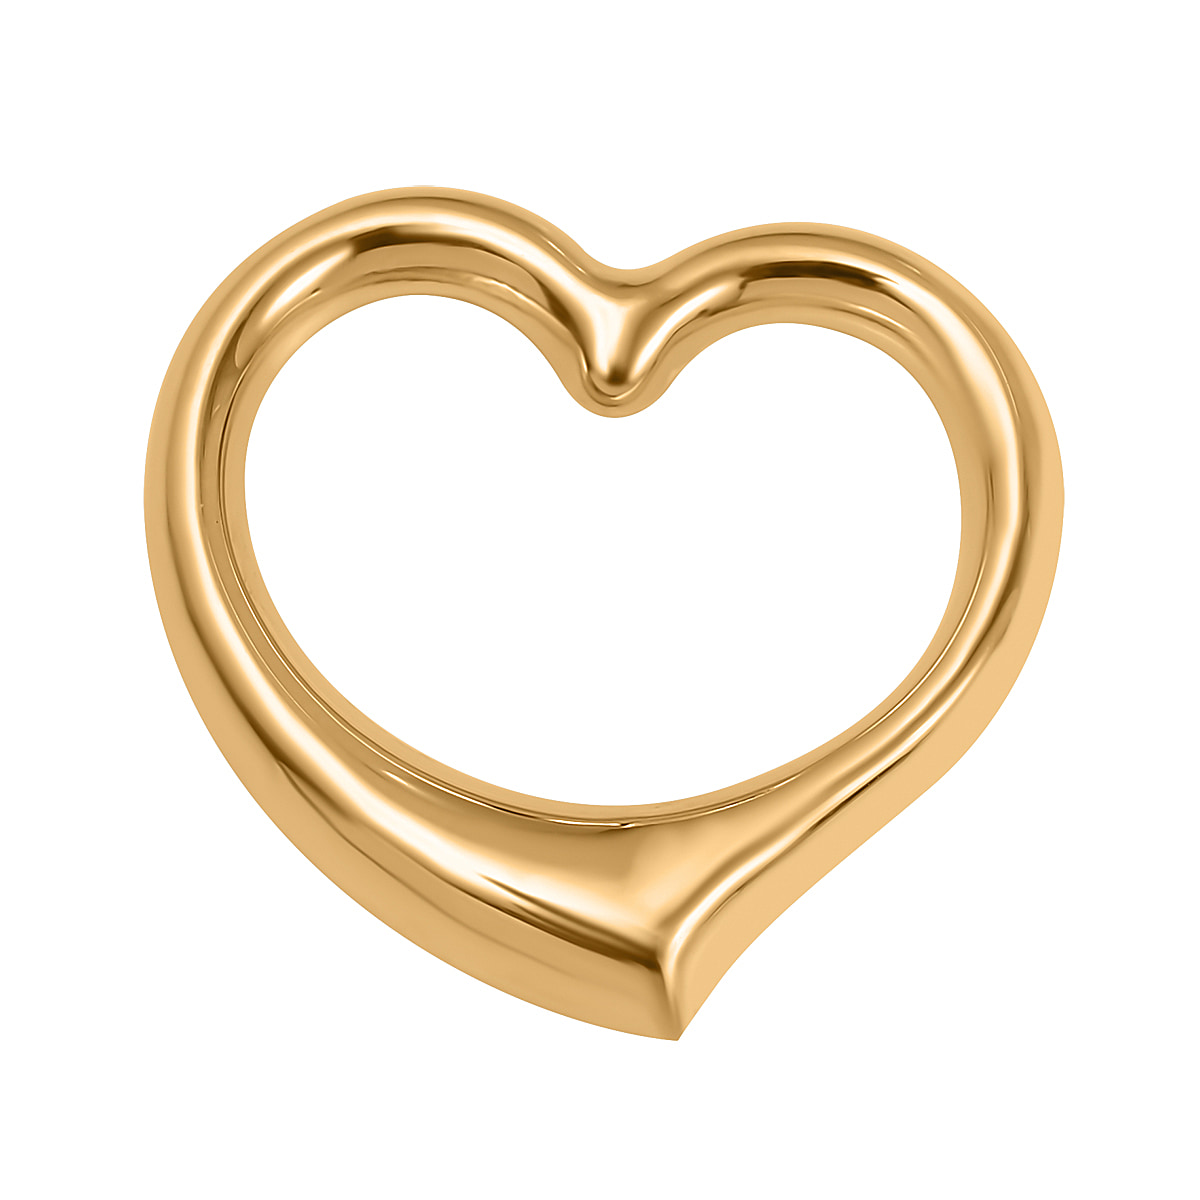 Designer Inspired - 9K Gold Open Heart Pendant